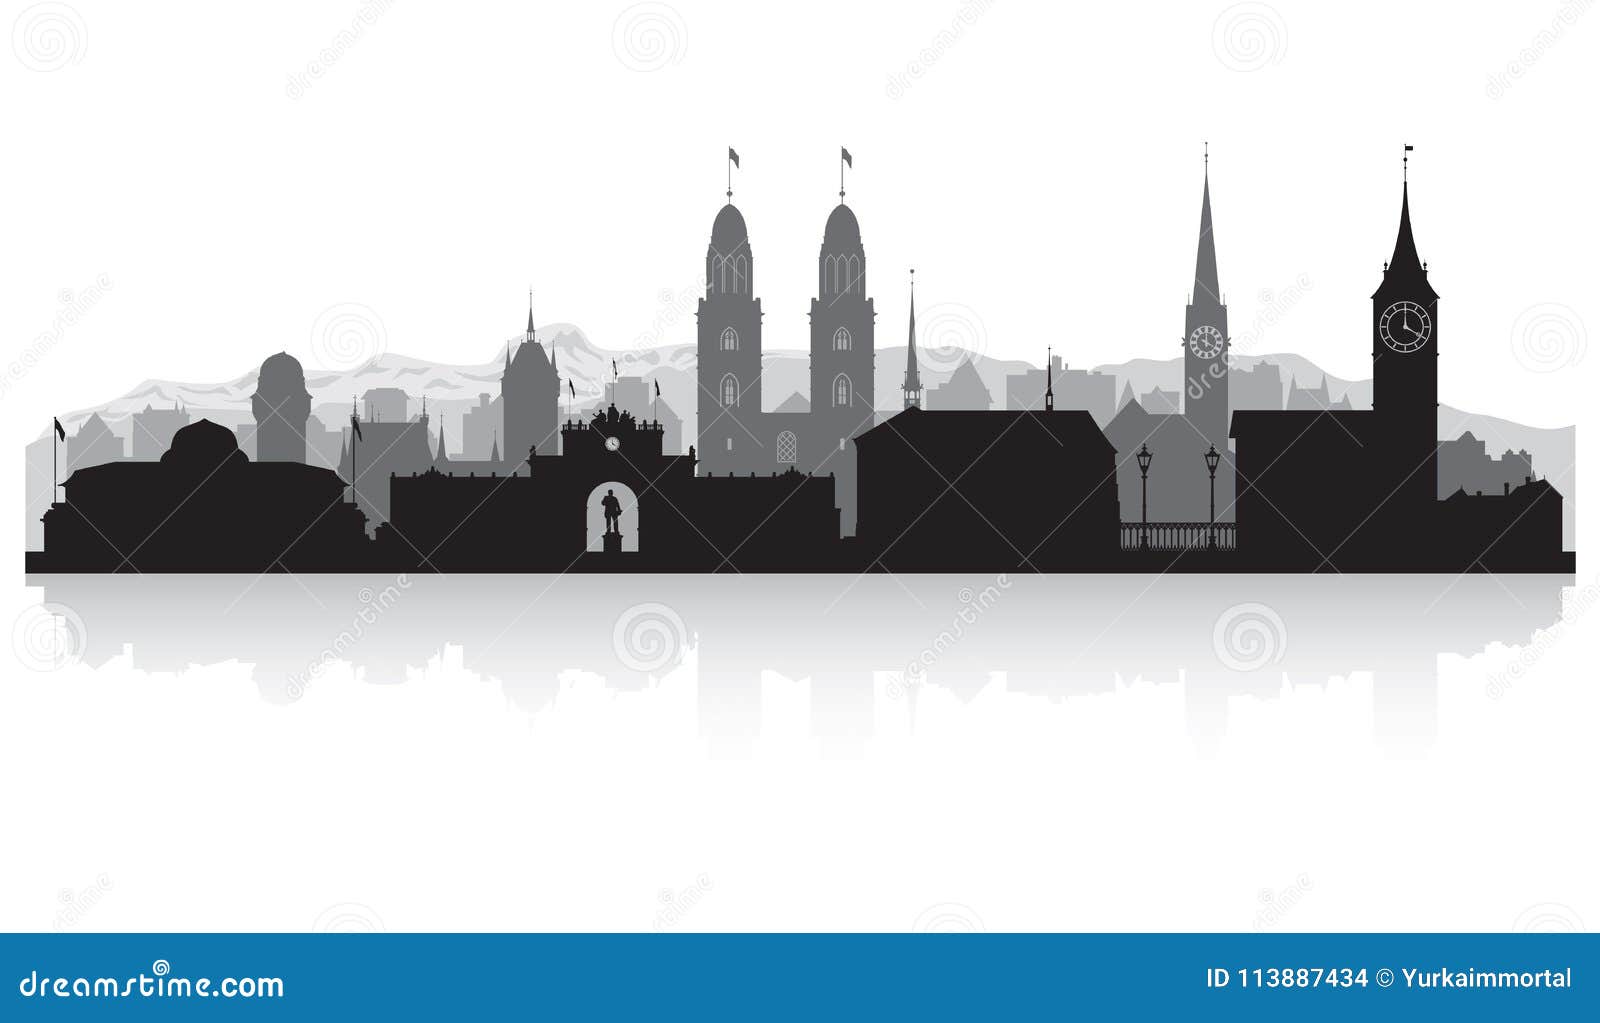 zurich switzerland city skyline silhouette